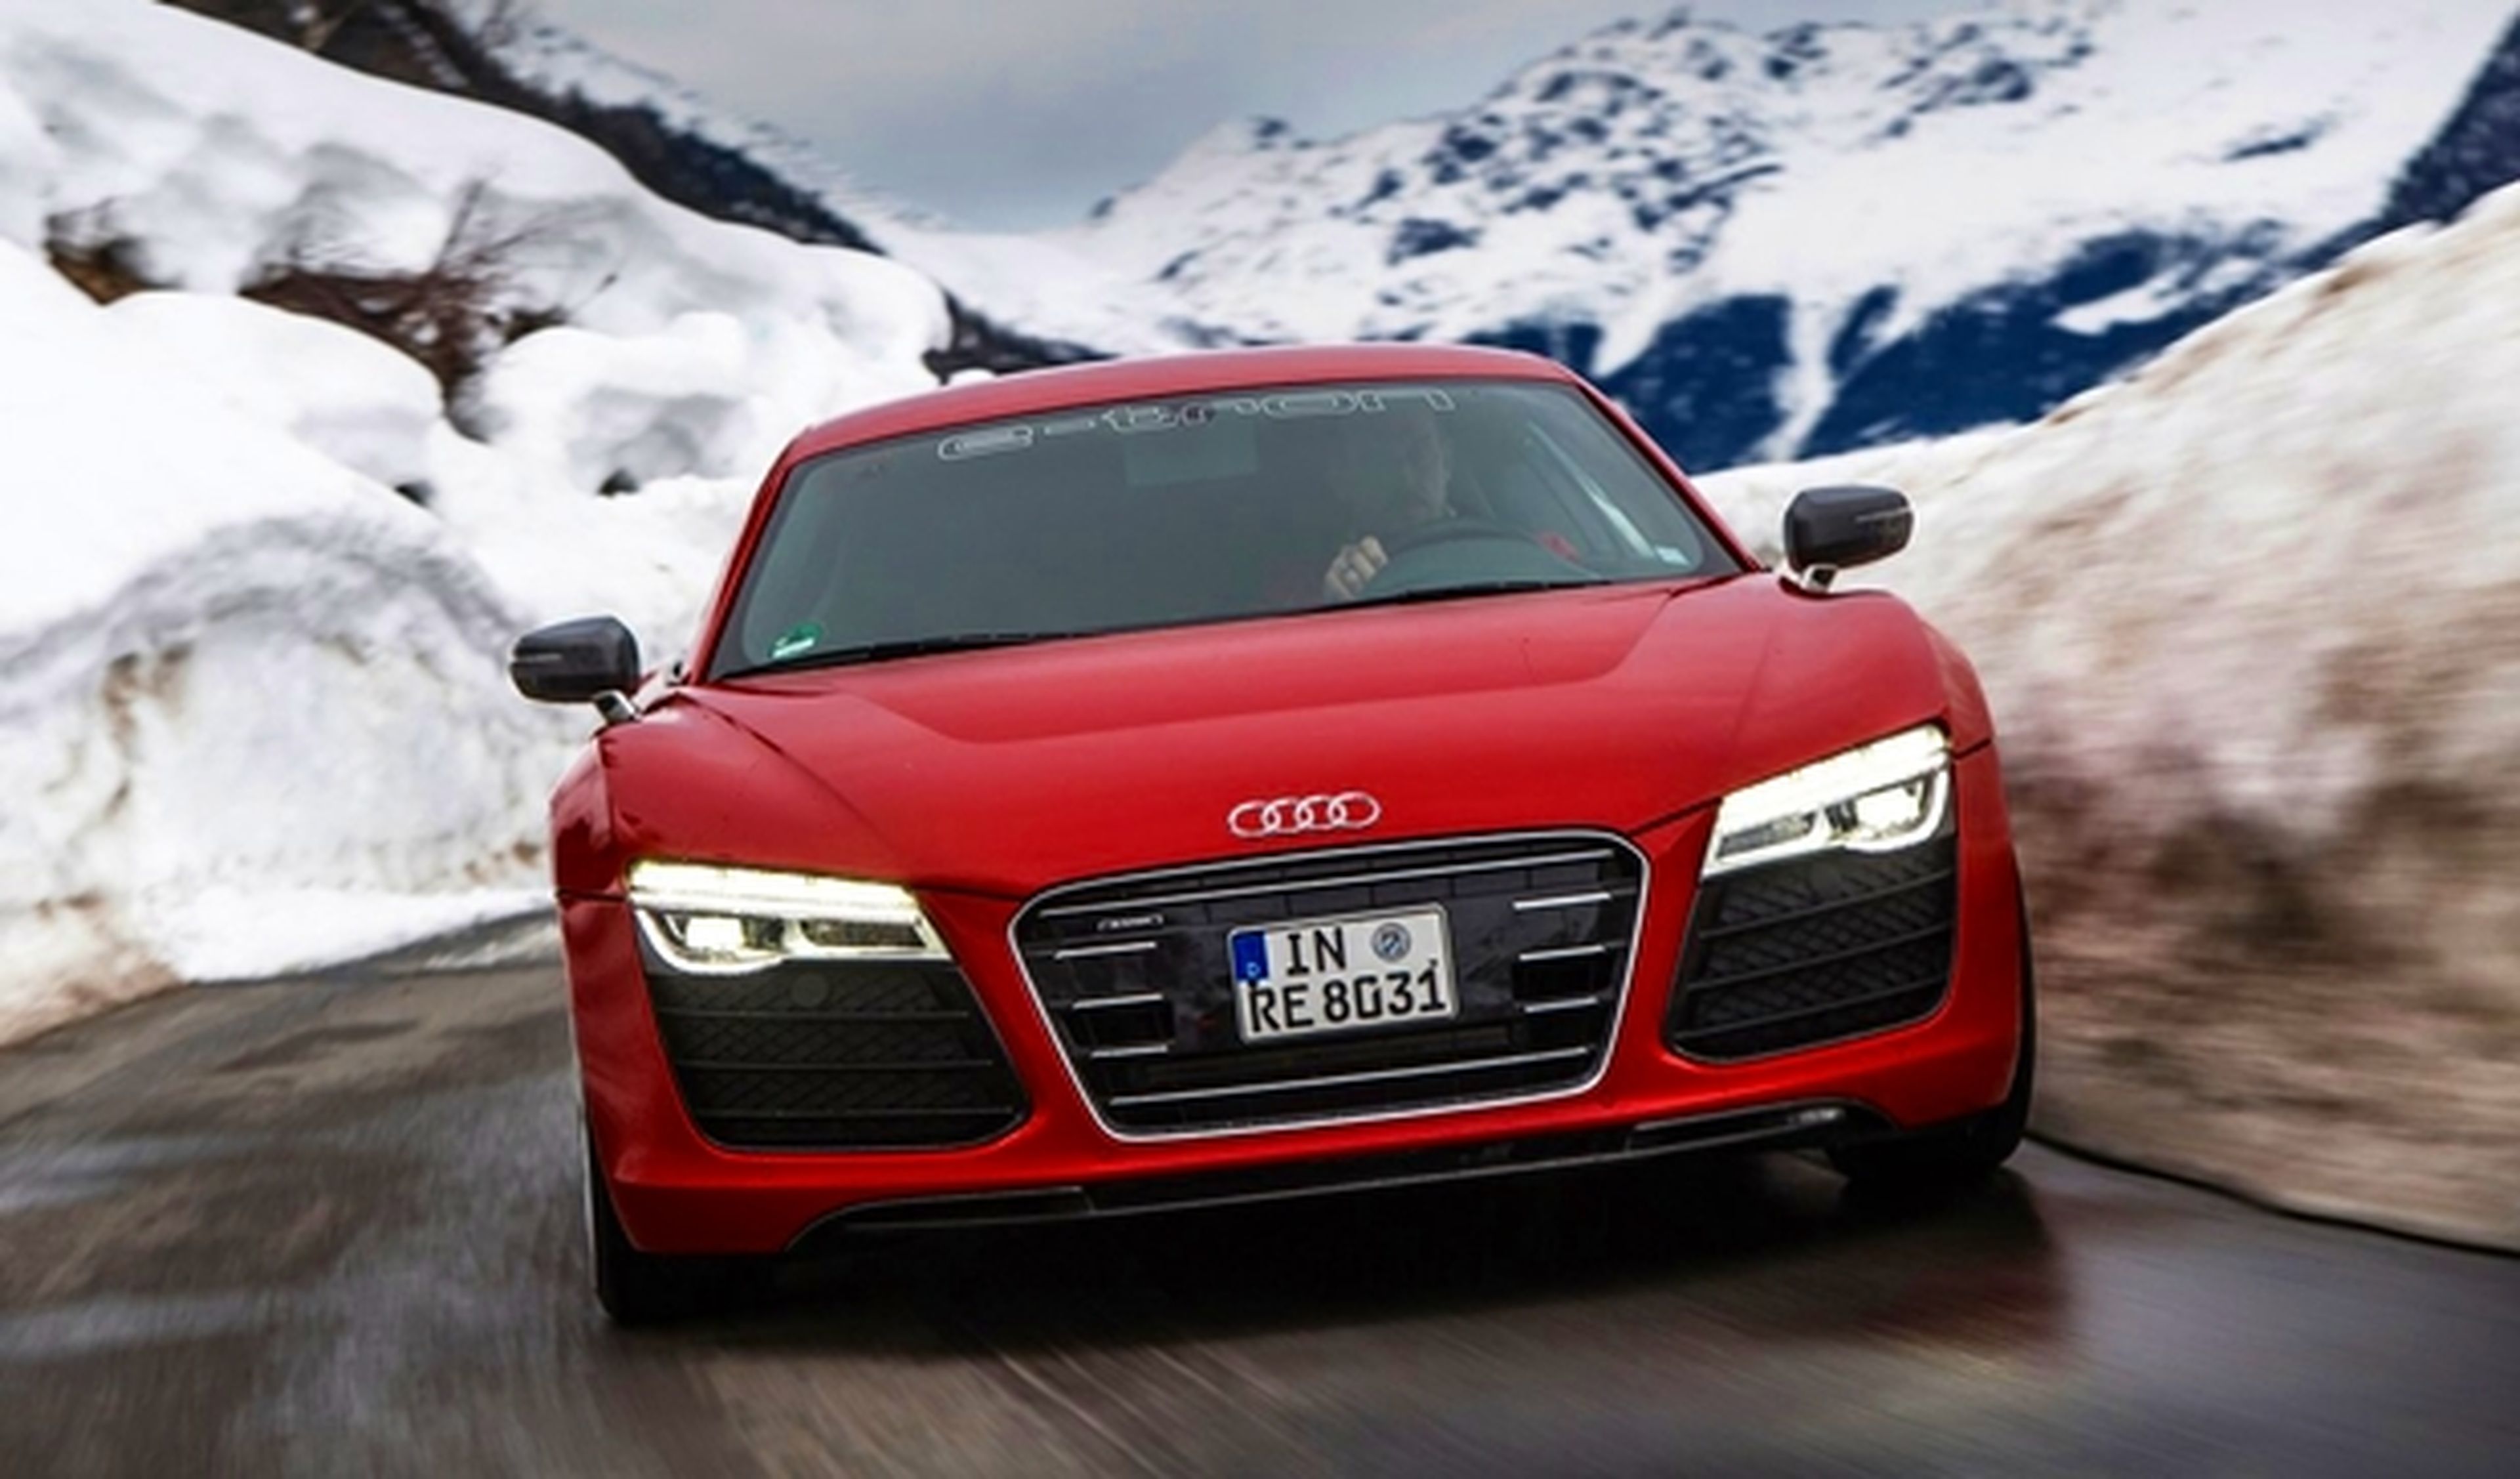 Audi confirma sus dos eléctricos puros con más de 500 km